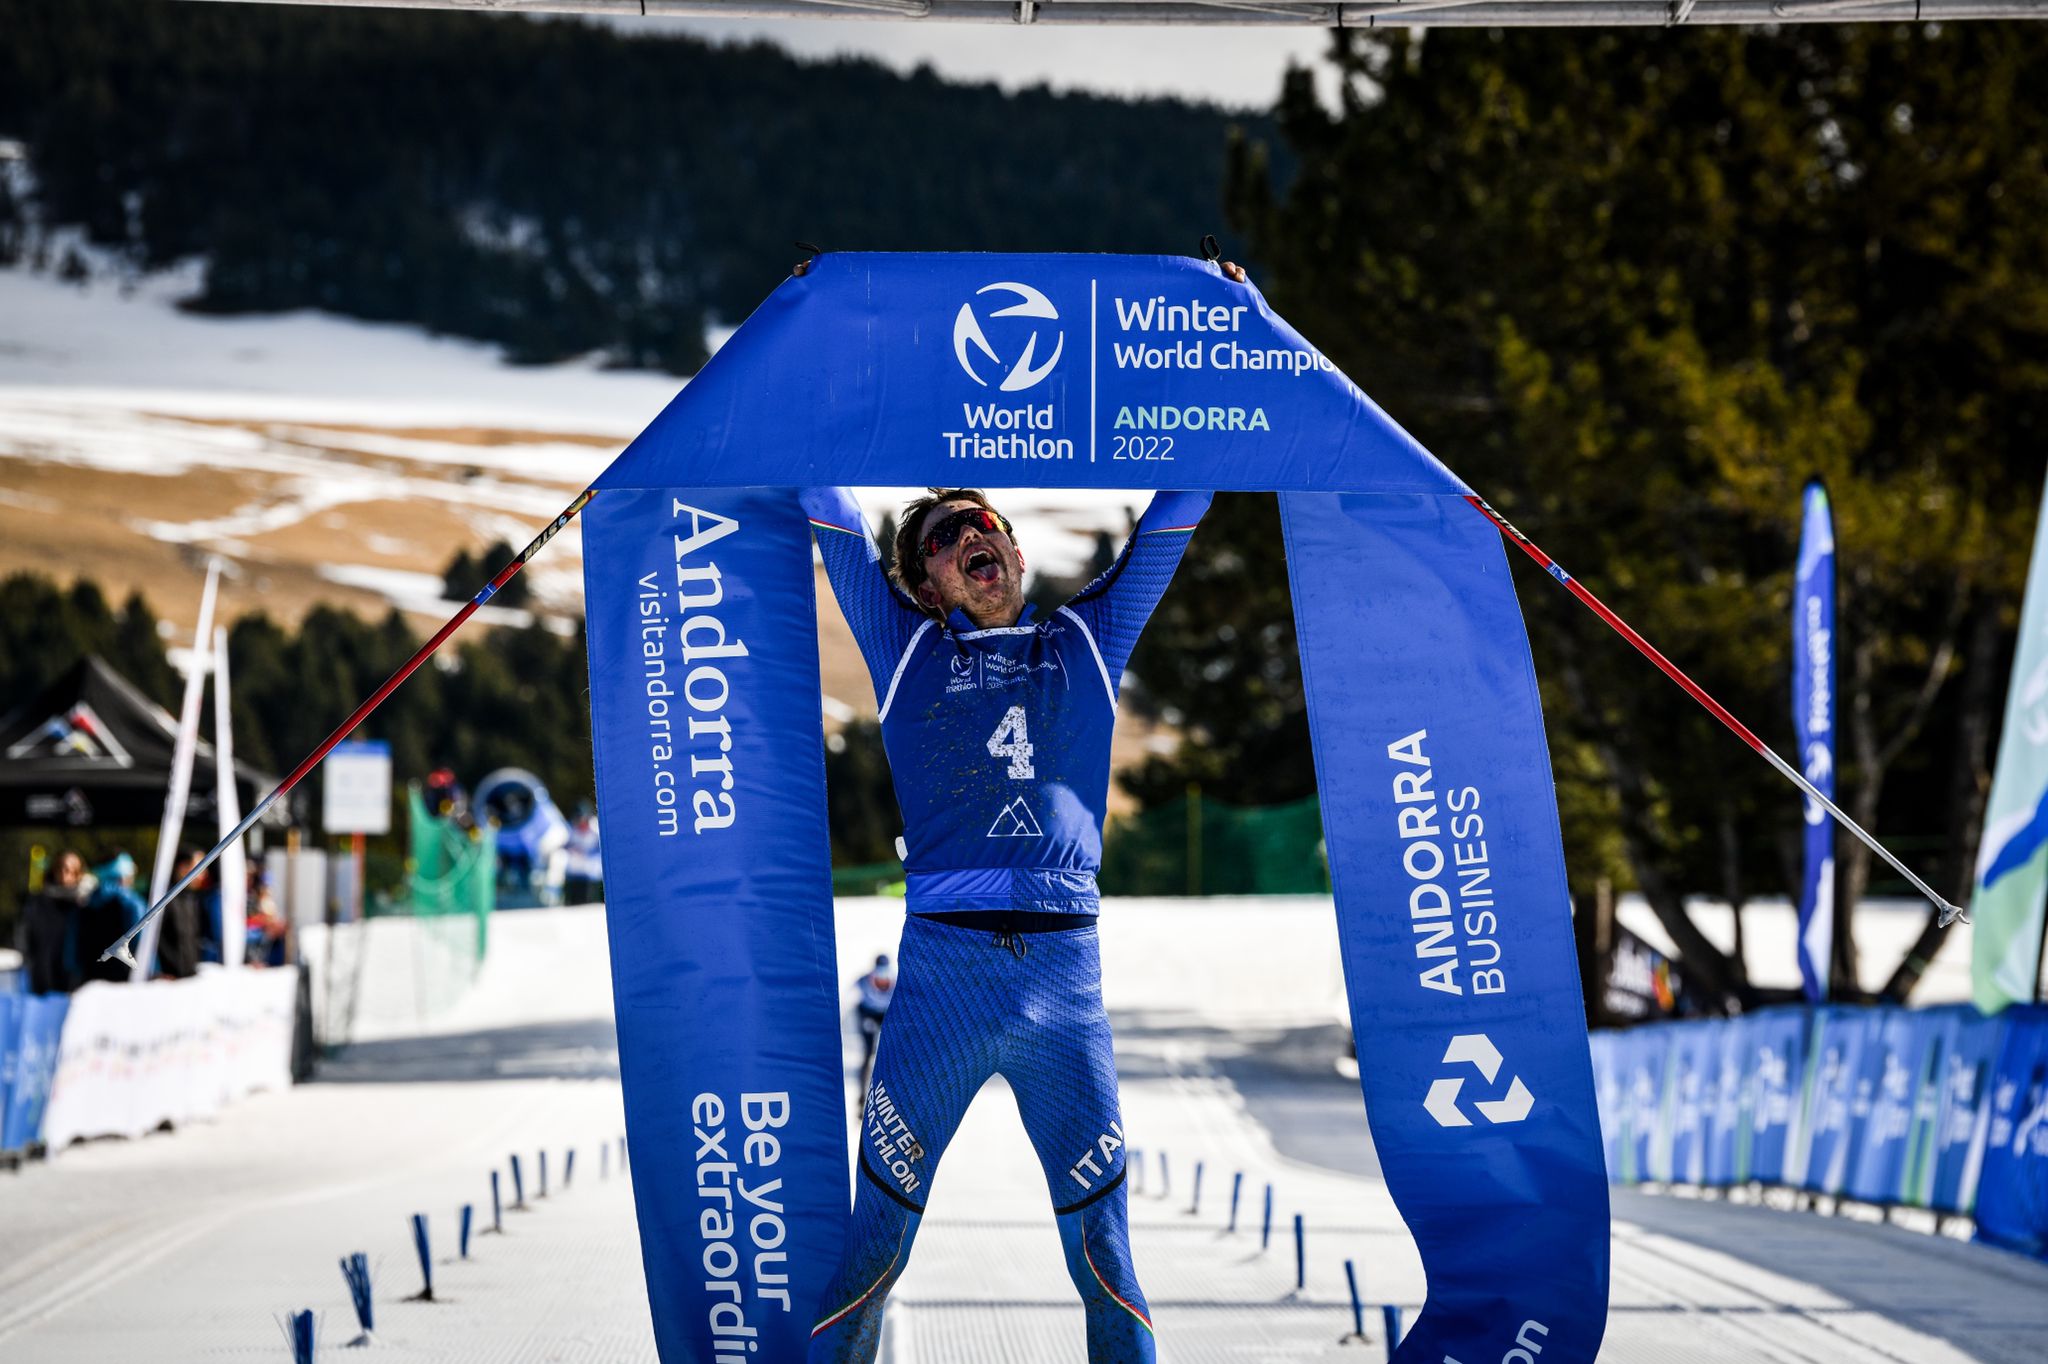 Italia del Winter travolgente ai Mondiali di Andorra: Pesavento è Campione del mondo, Mairhofer argento, Tanara Oro U23 e Giuliano argento Junior